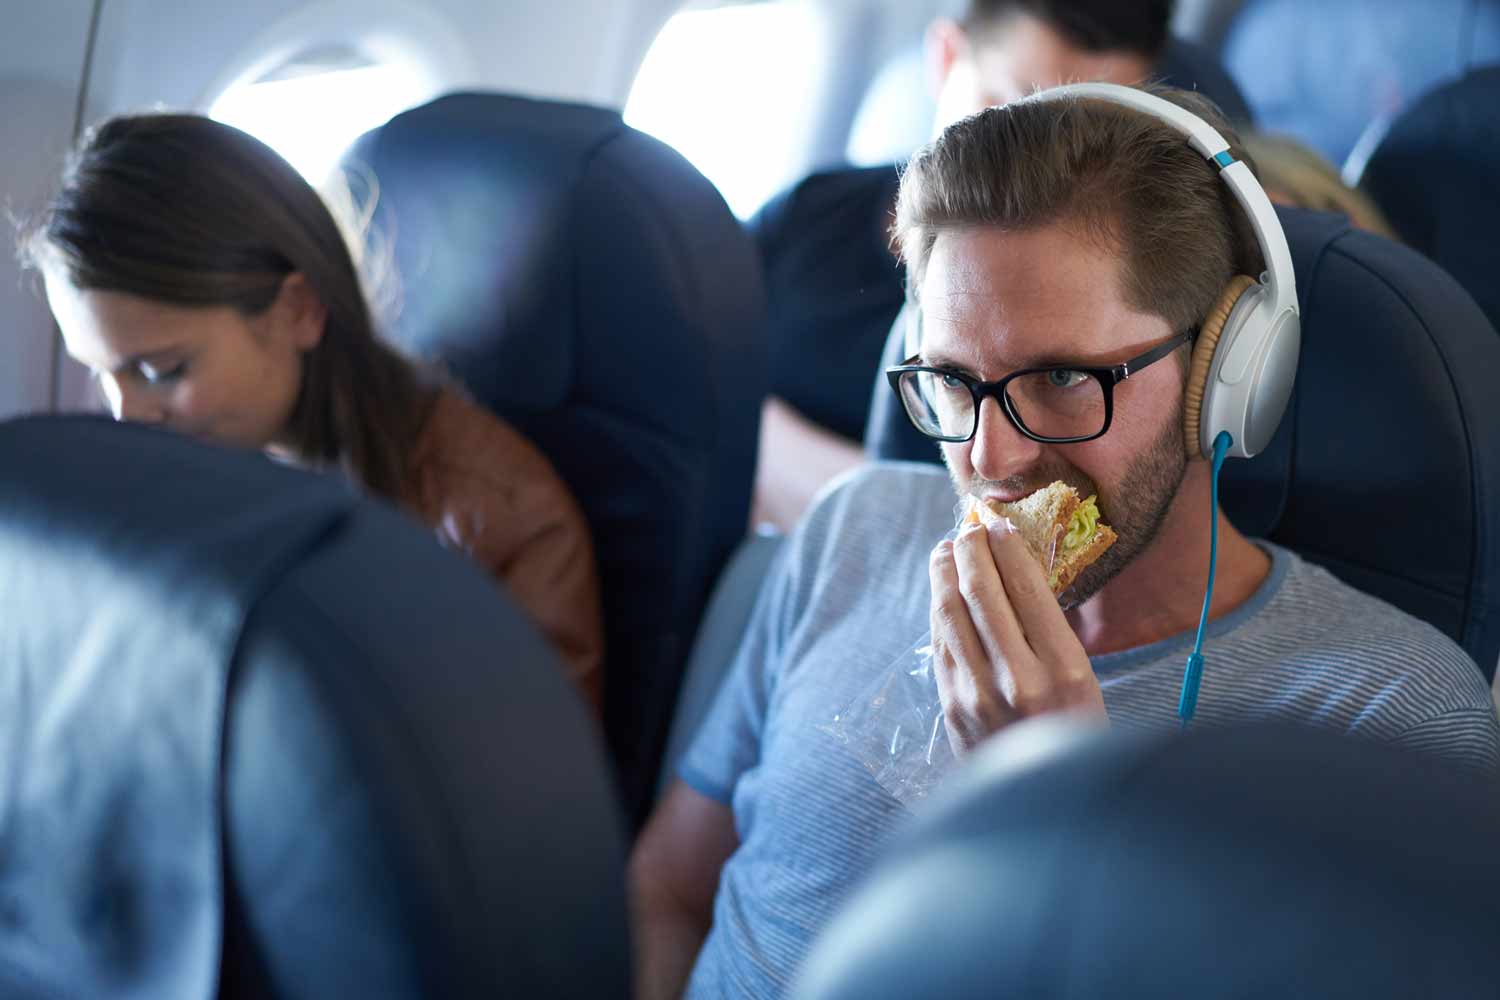 Wearing Headphones Apparently Makes Plane Food Taste Better